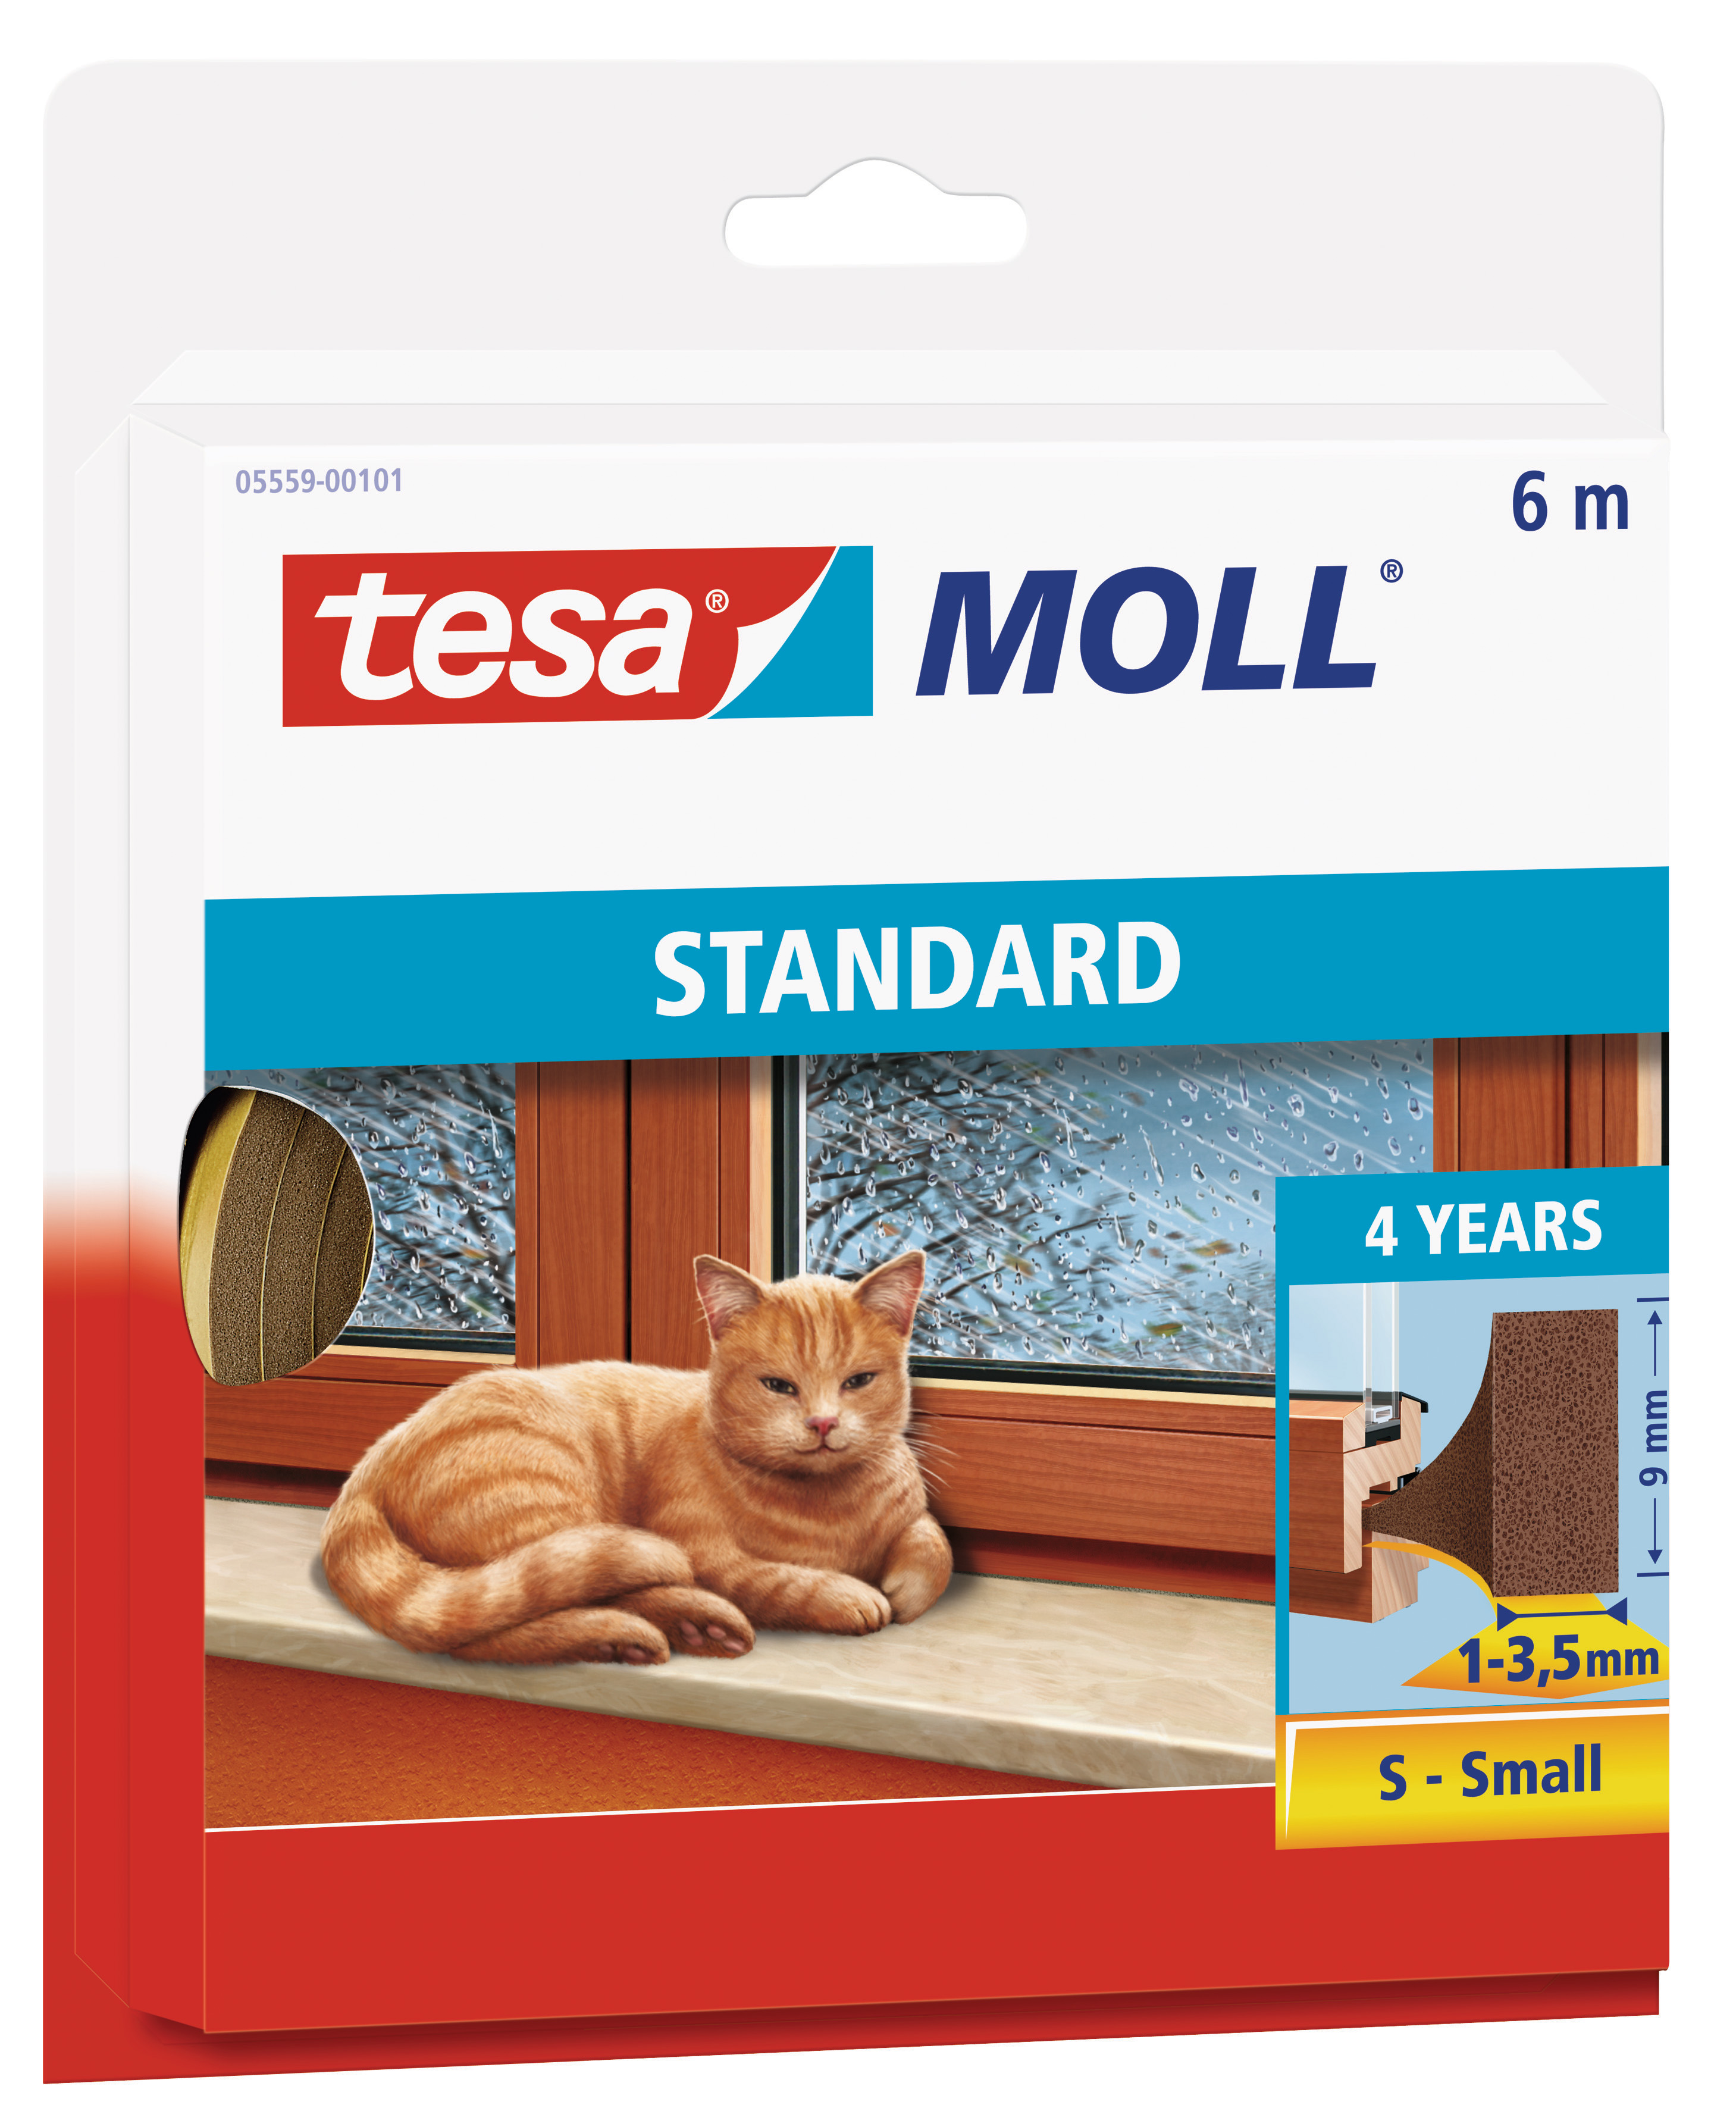 TESA tesamoll® STANDARD I-Profil Schaumstoffdichtband, 9 mm x 6 m, braun